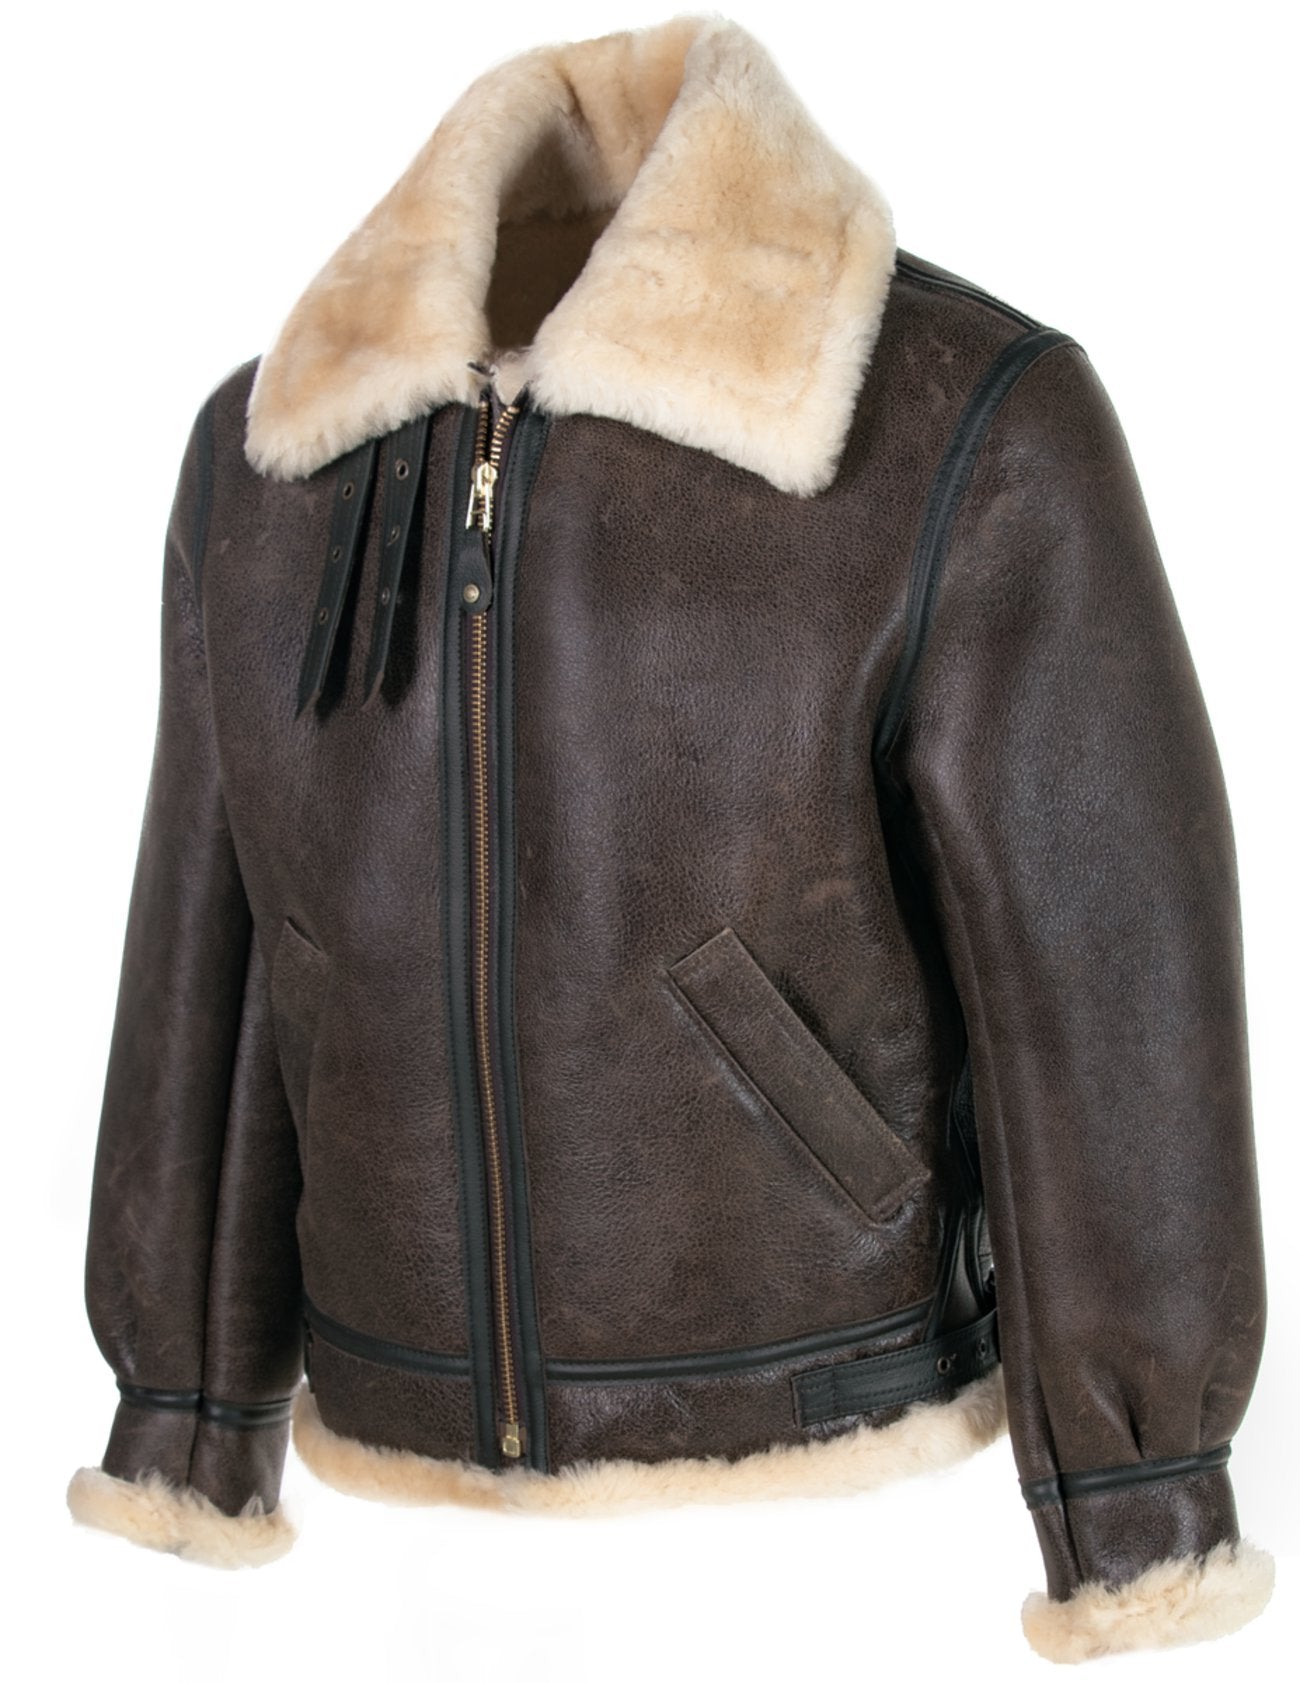 Classic B Sheepskin Leather Bomber Jacket